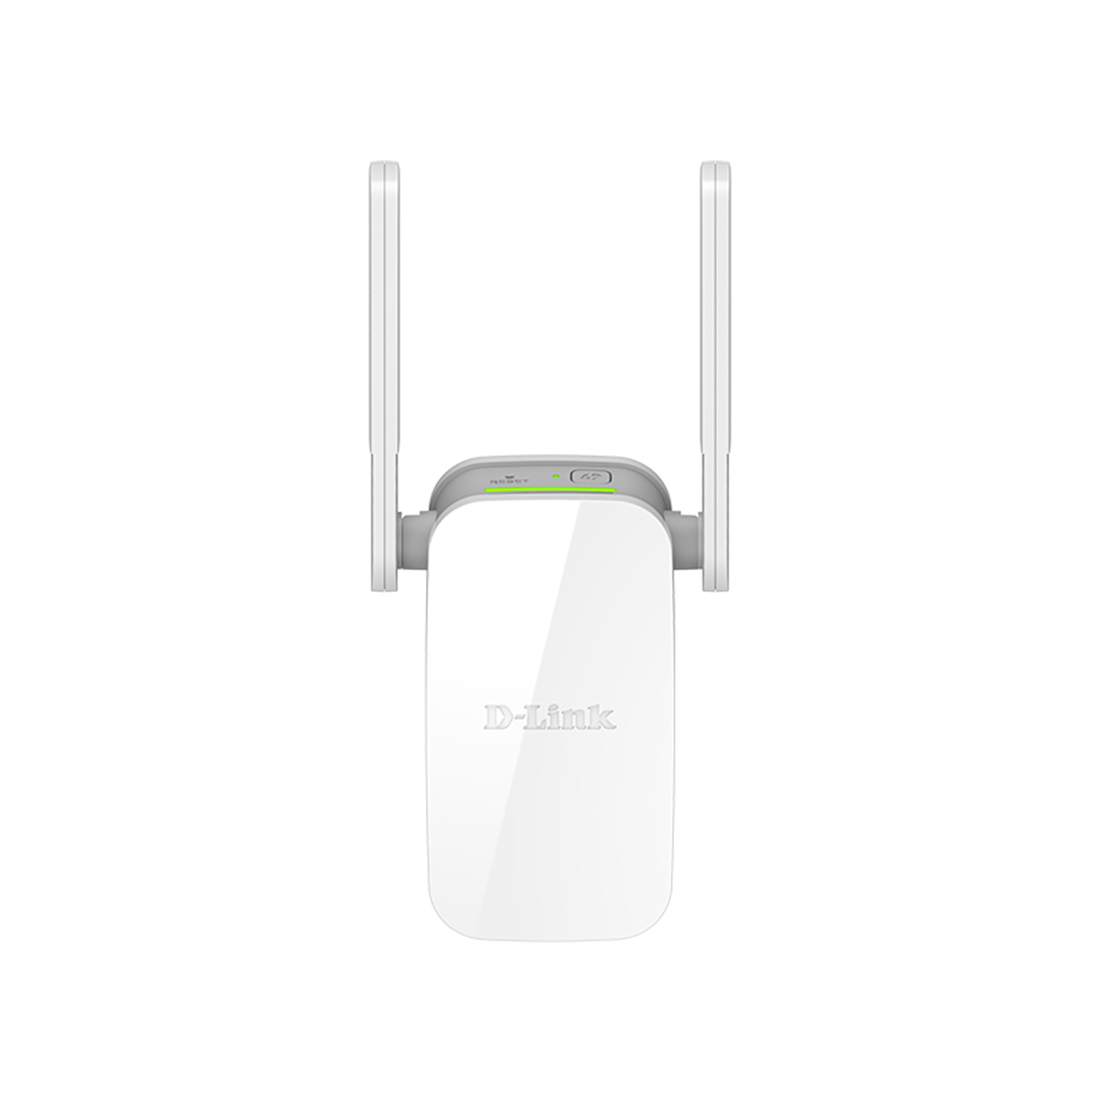 Wi-Fi беспроводной повторитель D-Link DAP-1610/ACR/A2A